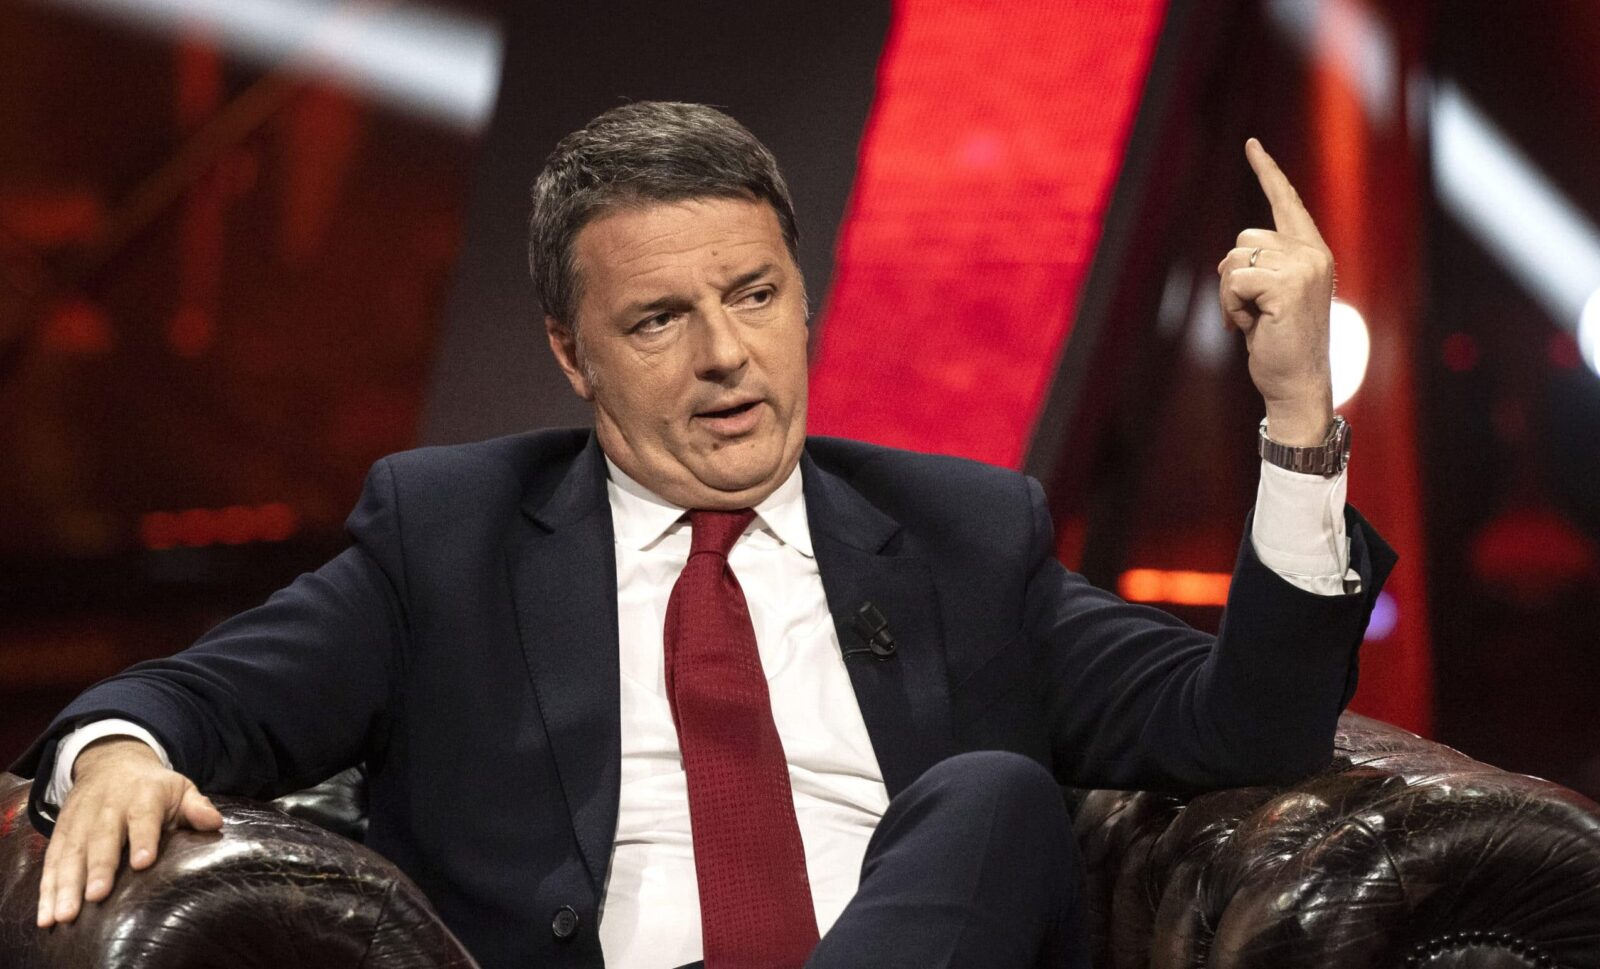 Il Senato secondo Matteo Renzi: logo di Palazzo Madama usato per chiedere pubblicità sul Riformista